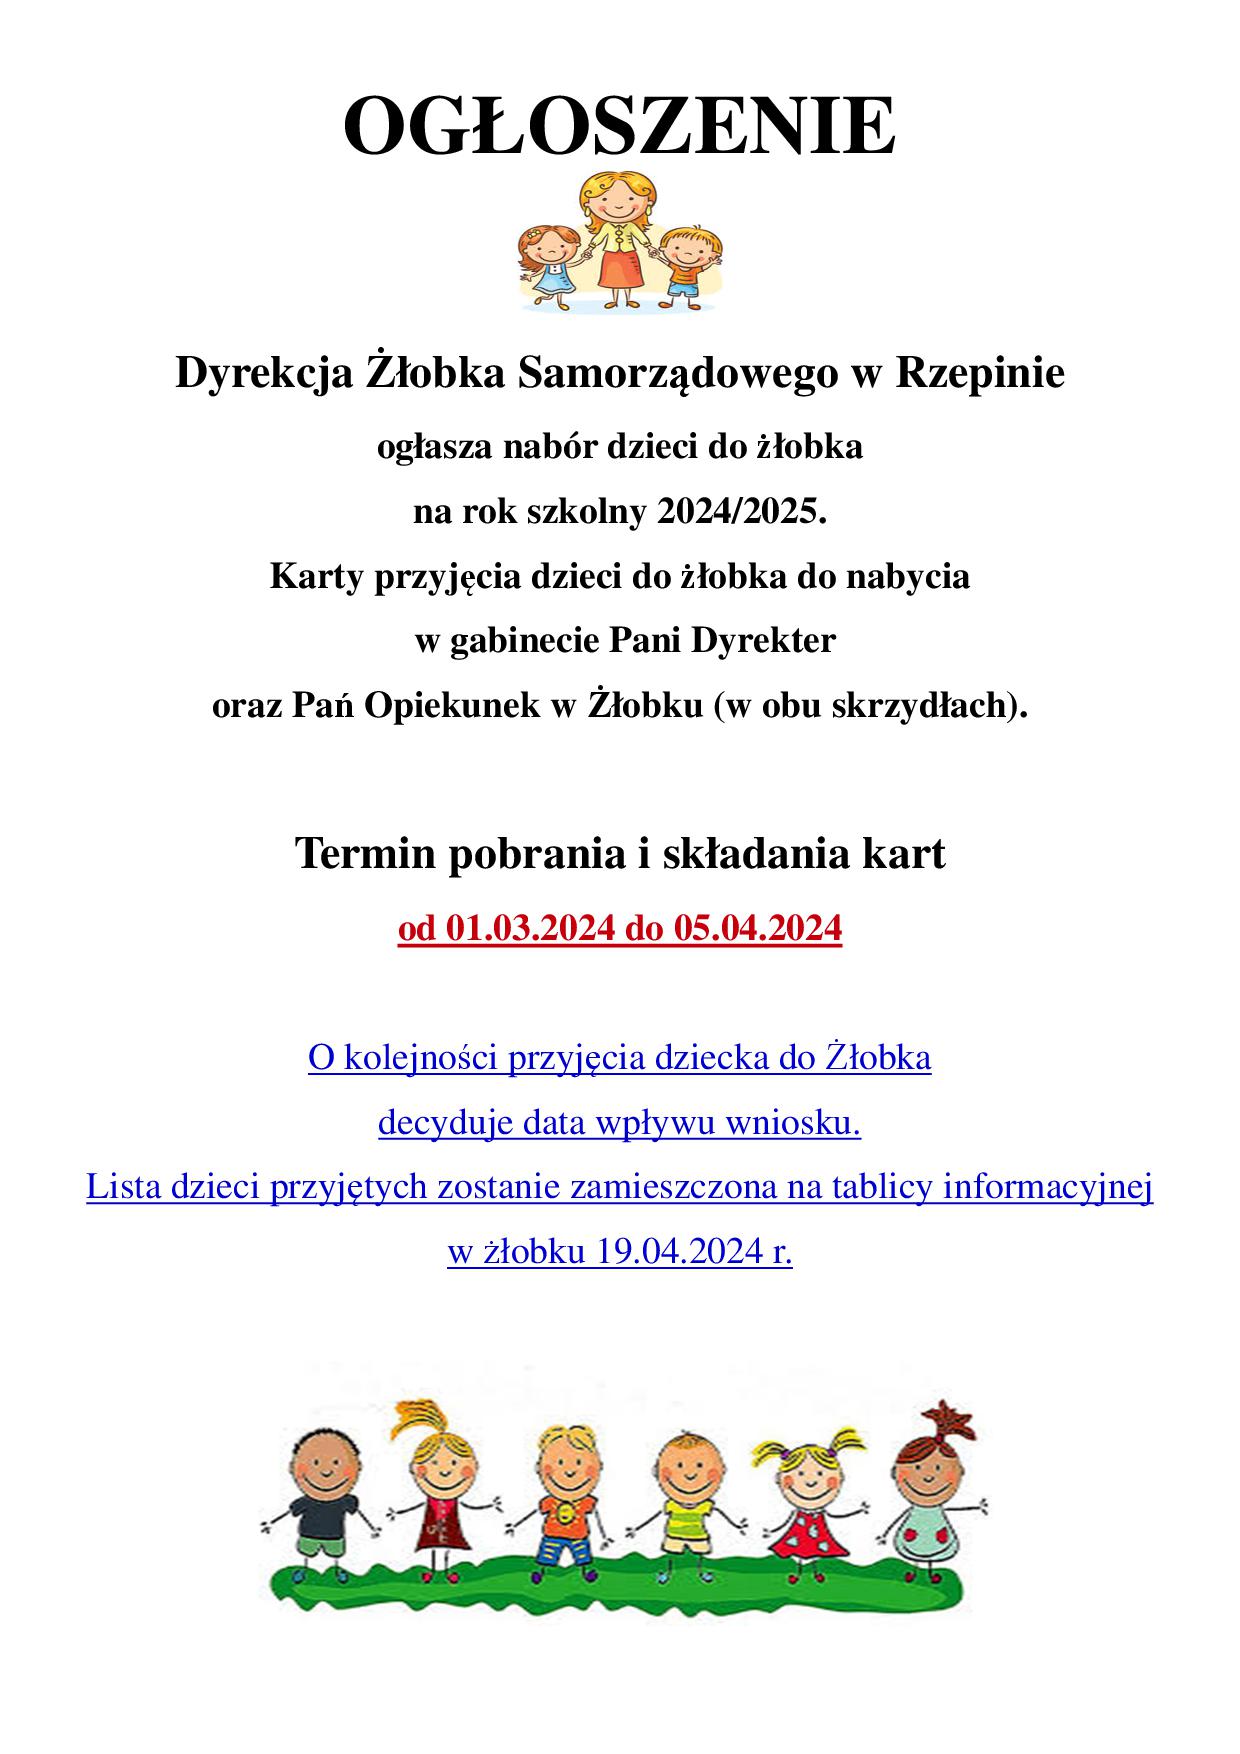 Ilustracja do informacji: Dyrekcja Żłobka Samorządowego w Rzepinie ogłasza nabór dzieci do żłobka na rok szkolny 2024/2025 